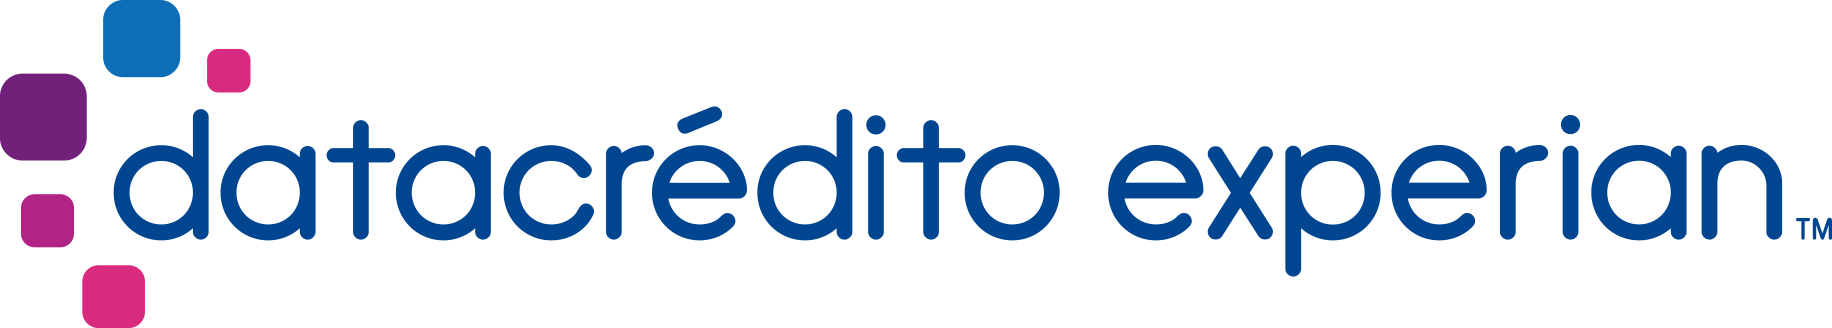 logo_datacredito